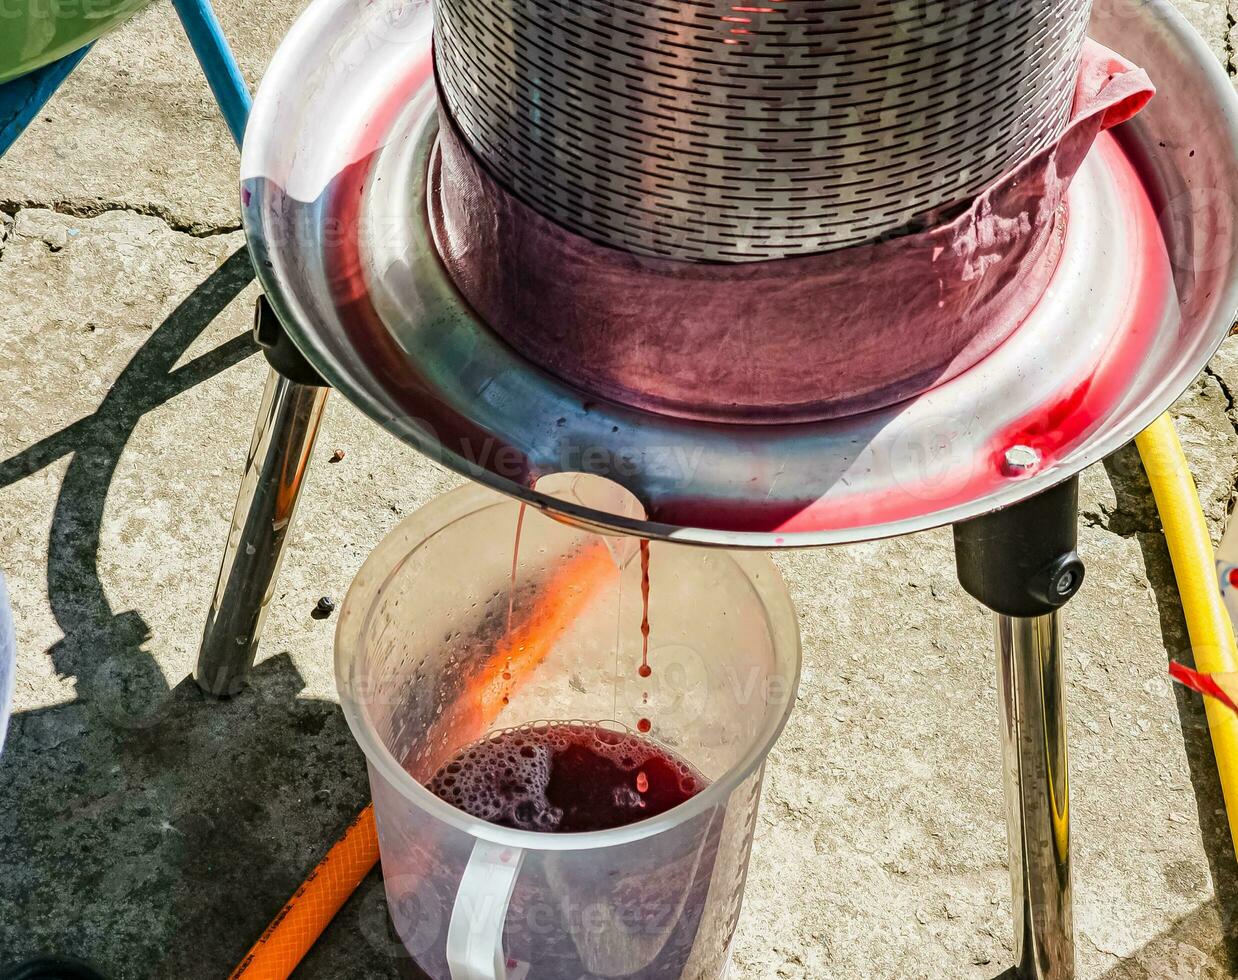 le processus de fabrication fait maison grain de raisin du vin. le opération de une hydraulique presse à obtenir grain de raisin jus pour fermentation. photo